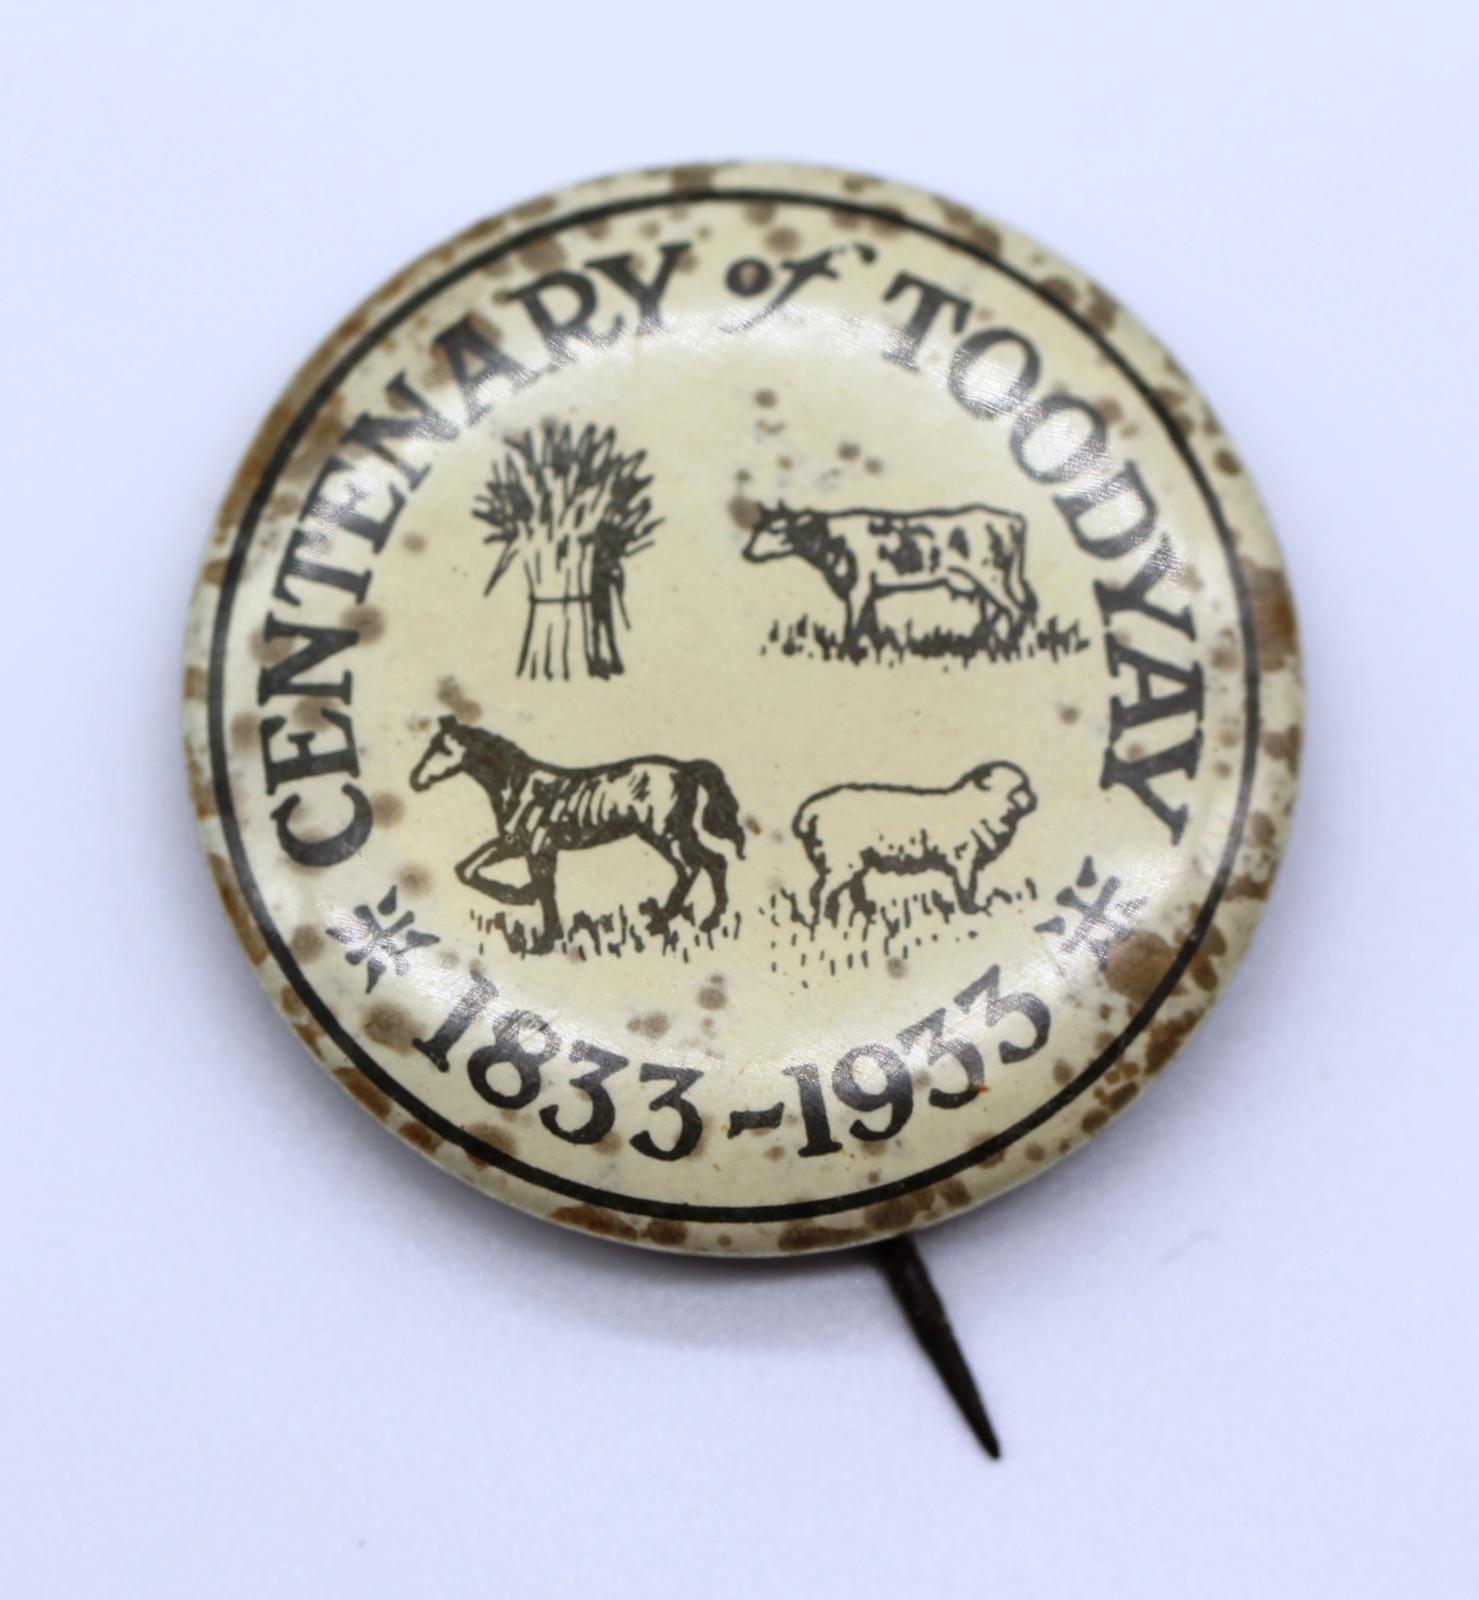 Toodyay Centennary Badge 1933